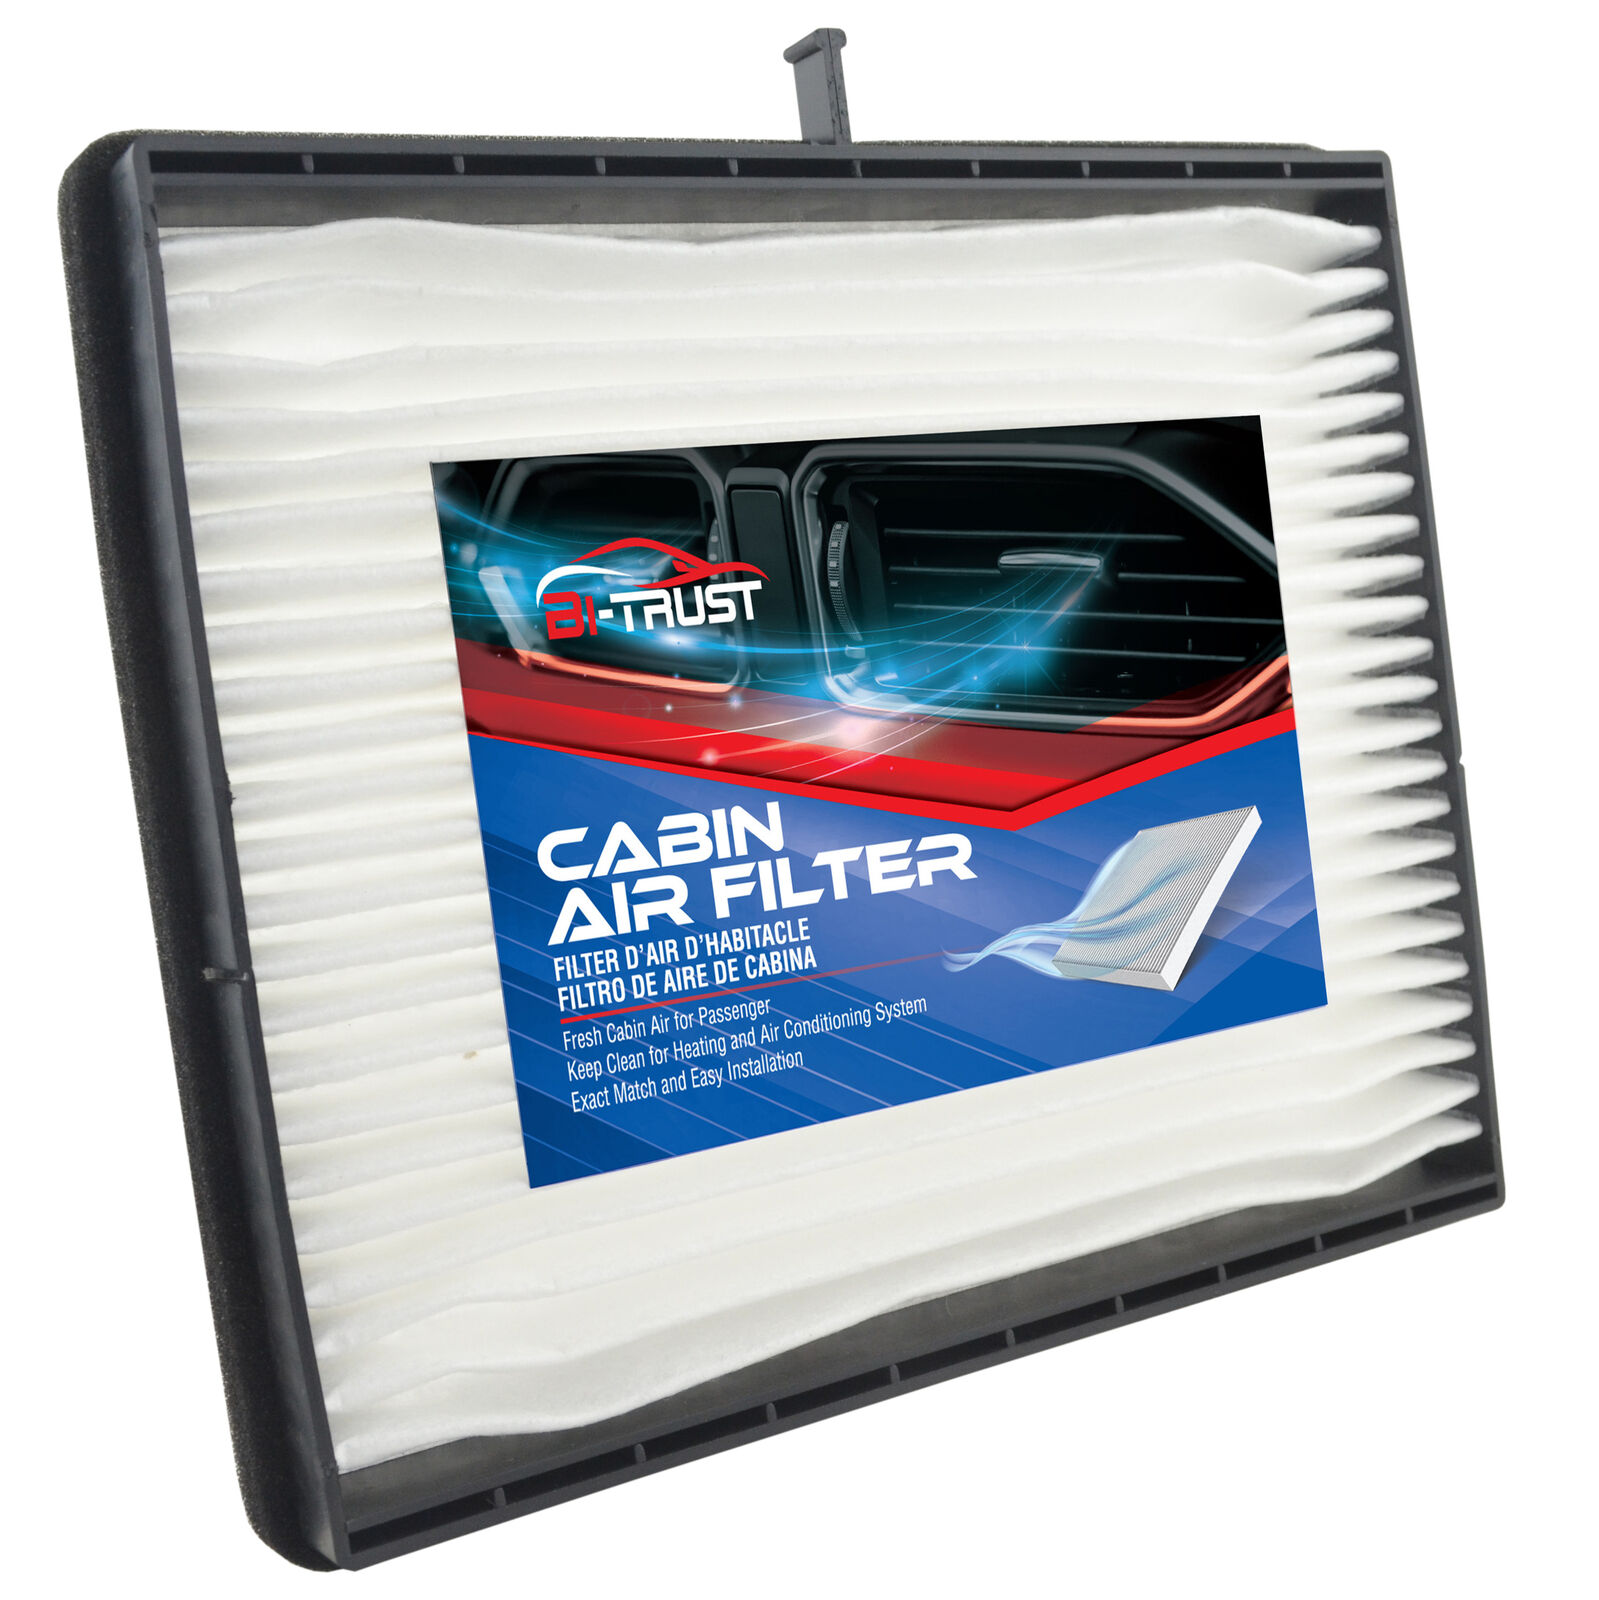 Cabin Air Filter for Chevrolet Optra 03-12 Suzuki Forenza Suzuki Reno 05-08